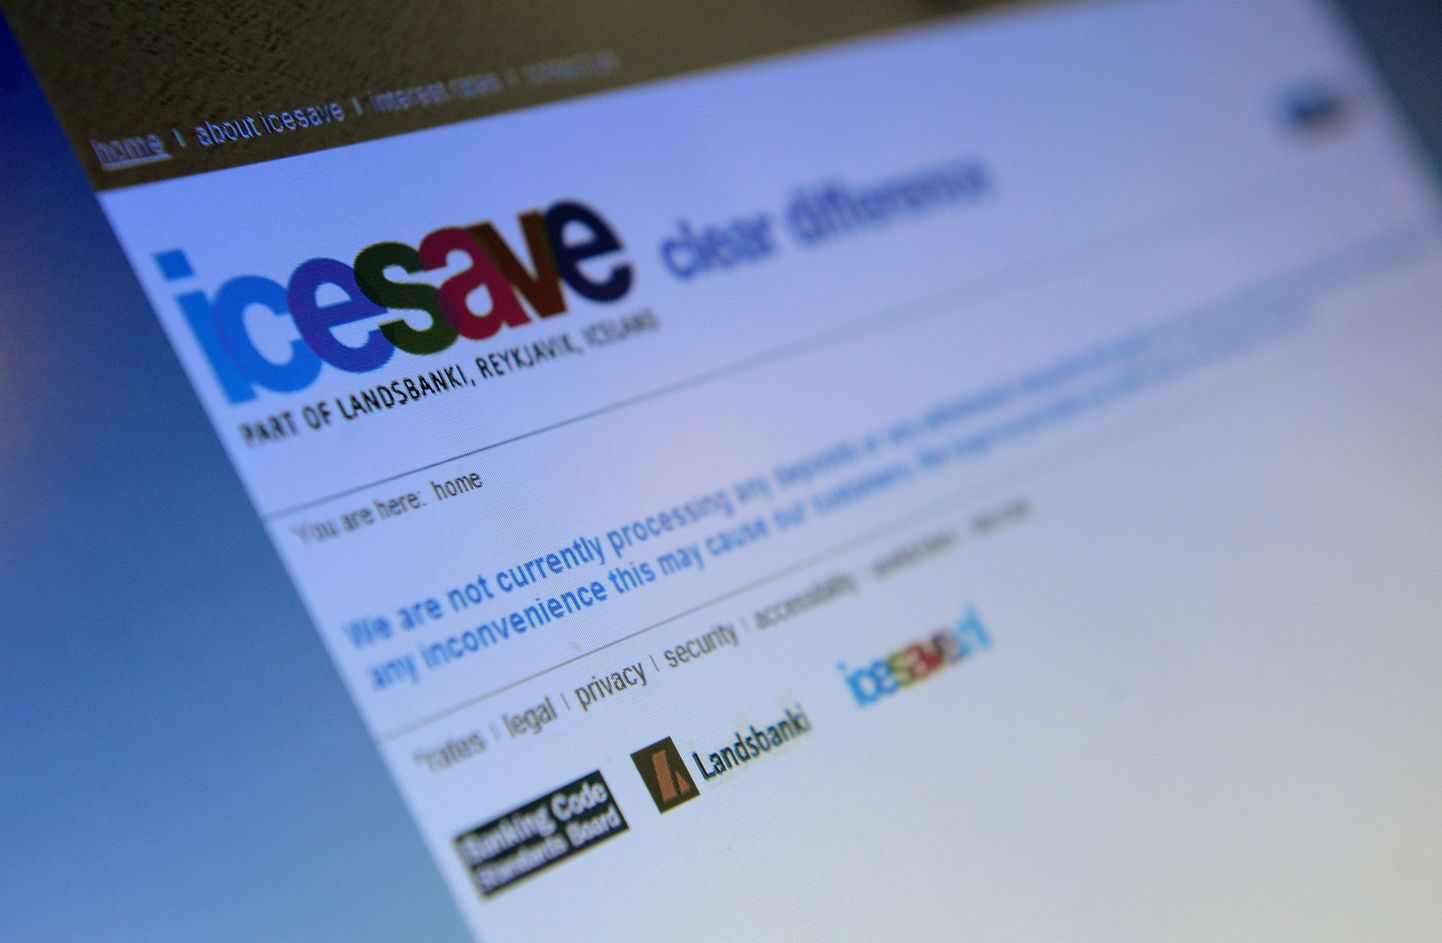 Icesave panga kodulehekülg internetis.